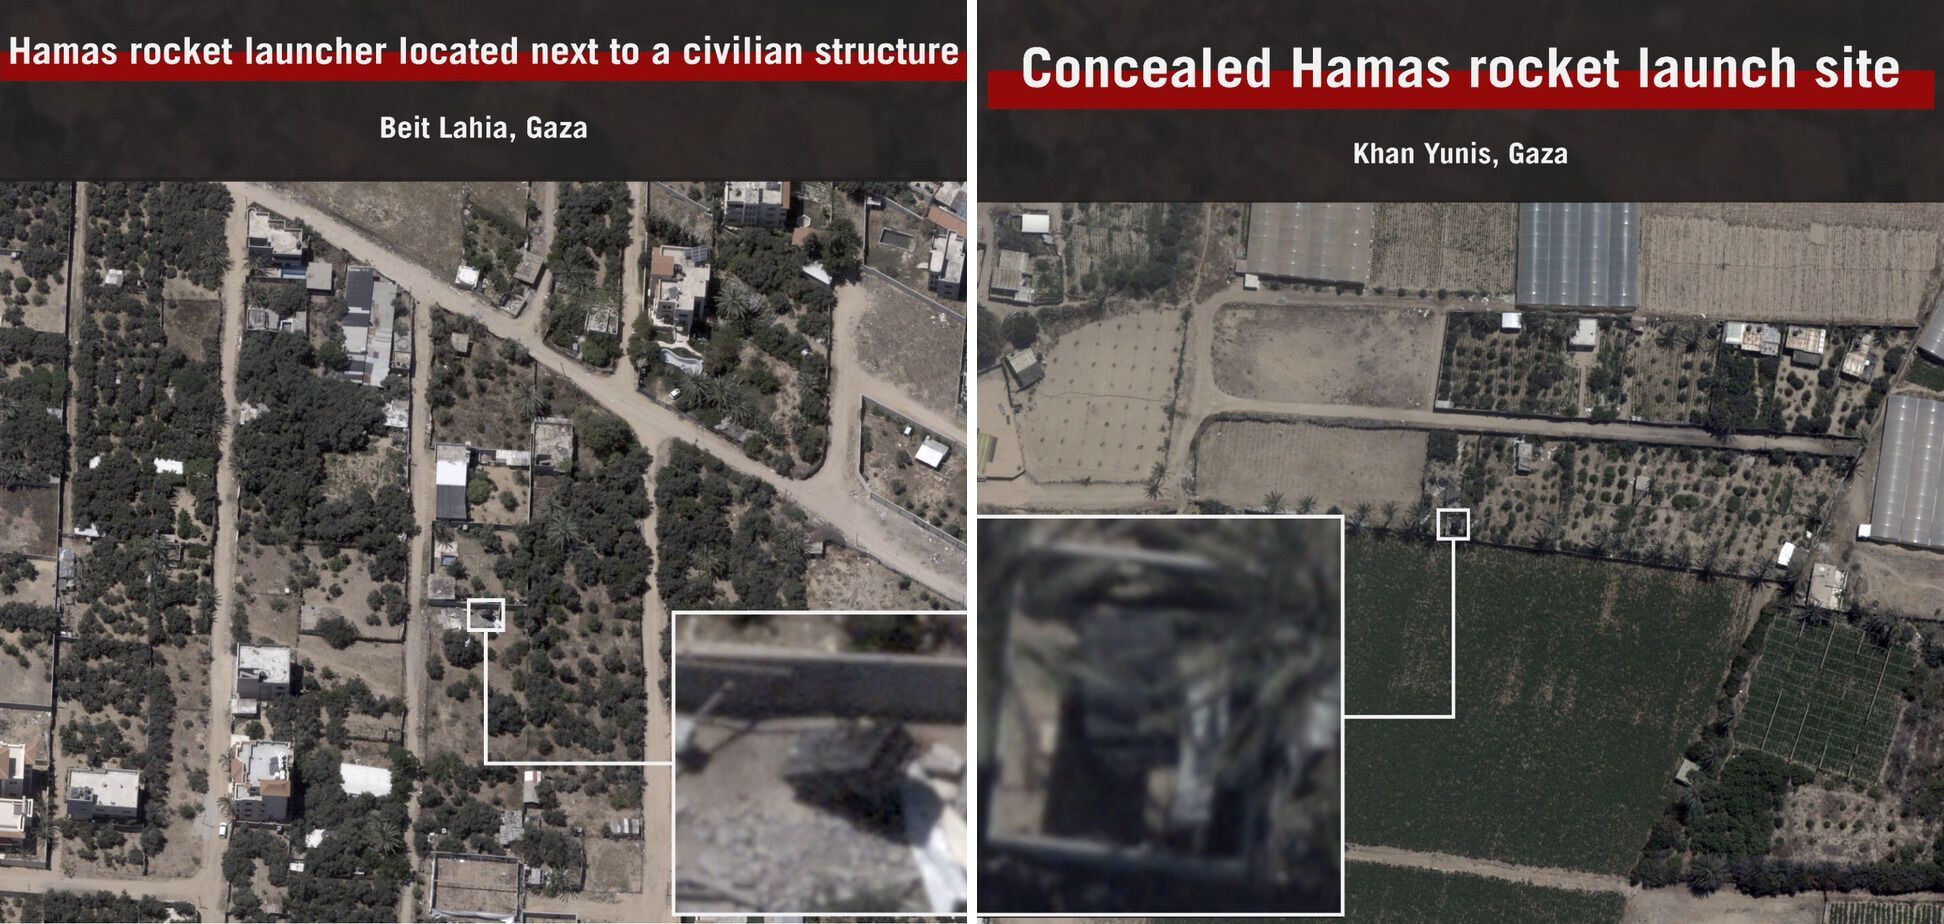 Оперштаб ХАМАСа взорван израильтянами: что сейчас происходит в зоне конфликта. Фото и видео